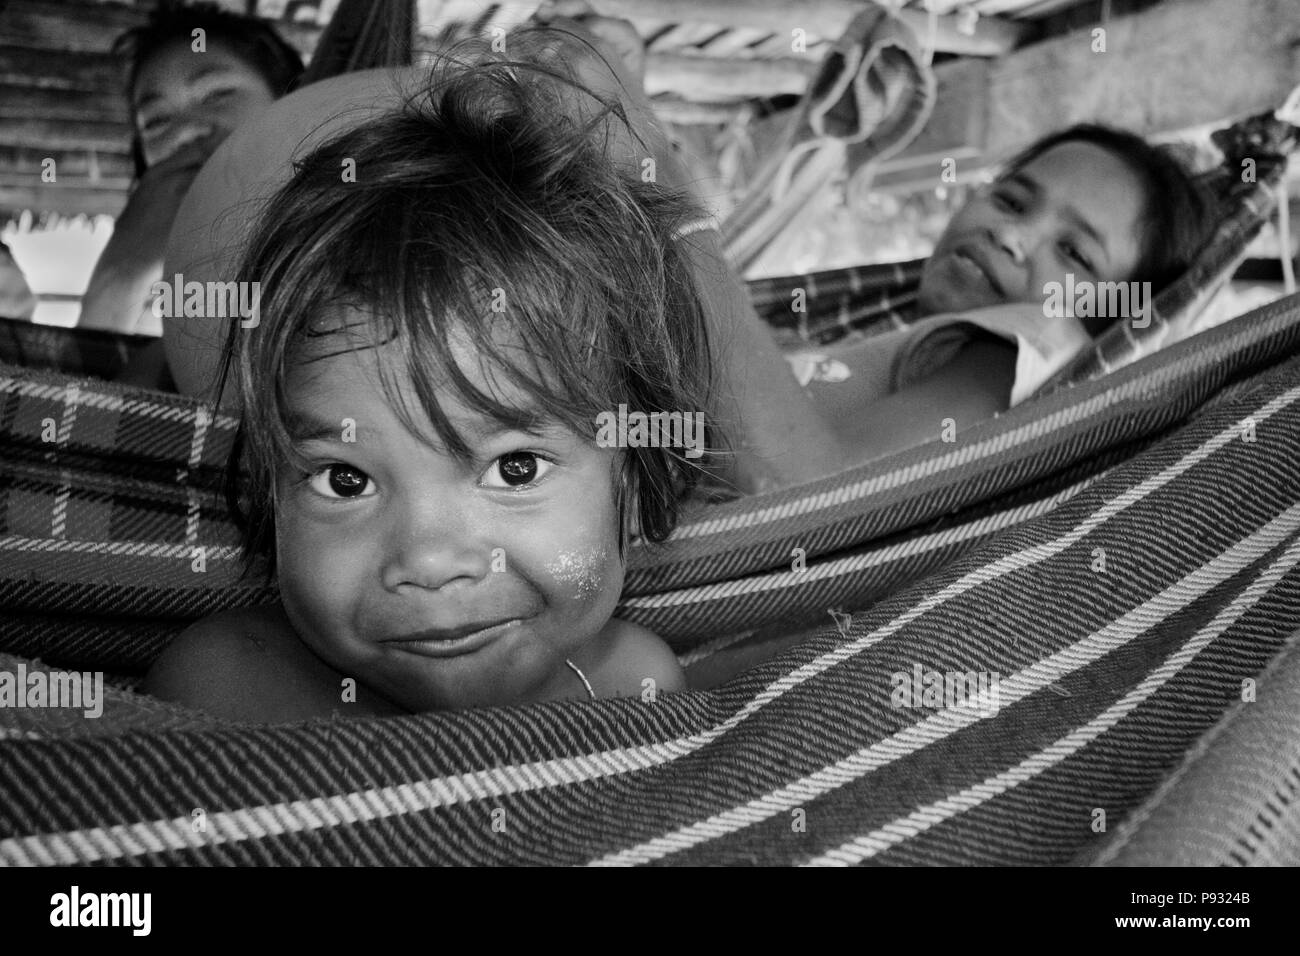 (Moken sea gypsy) enfant balançoires dans un hamac dans son village sur Ko Surin île thaïlandaise dans le Parc National de Mu Koh Surin - la mer d'Andaman, Thaïlande Banque D'Images